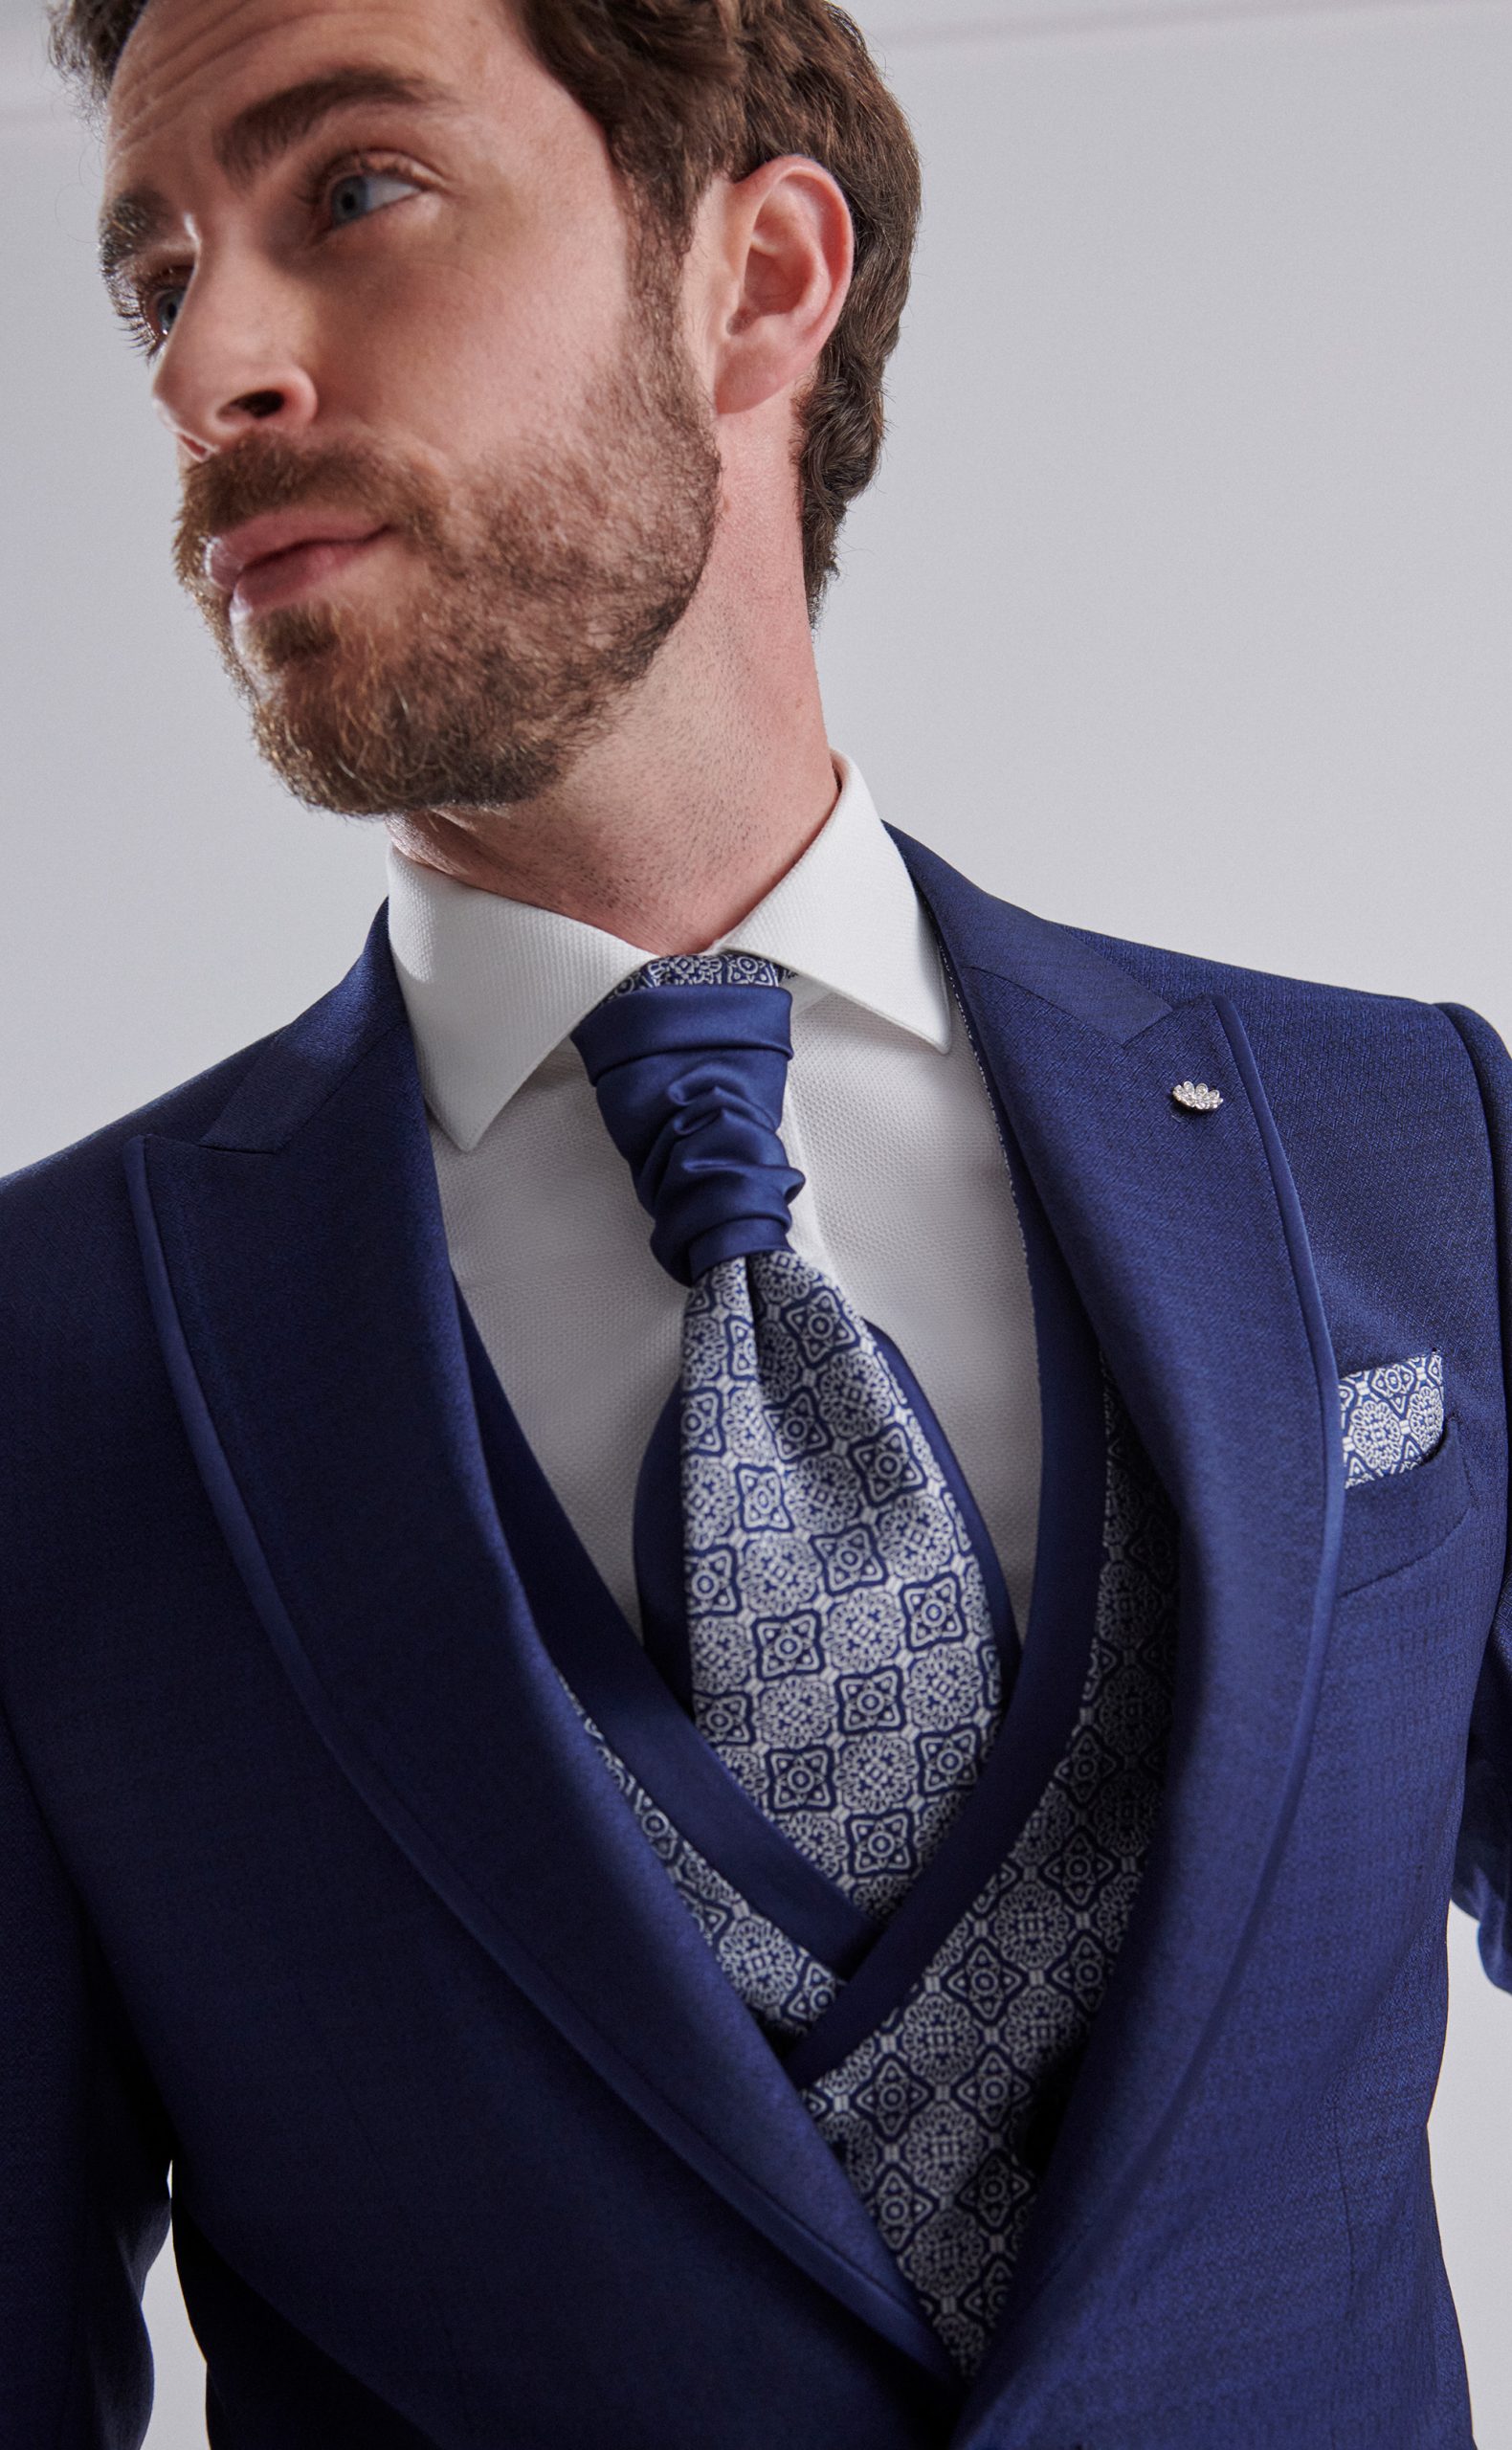 Traje de novio con tejido labrado y vivos en raso en color azul marino con chaleco cruzado y falsa solapa de la Colección Trend.